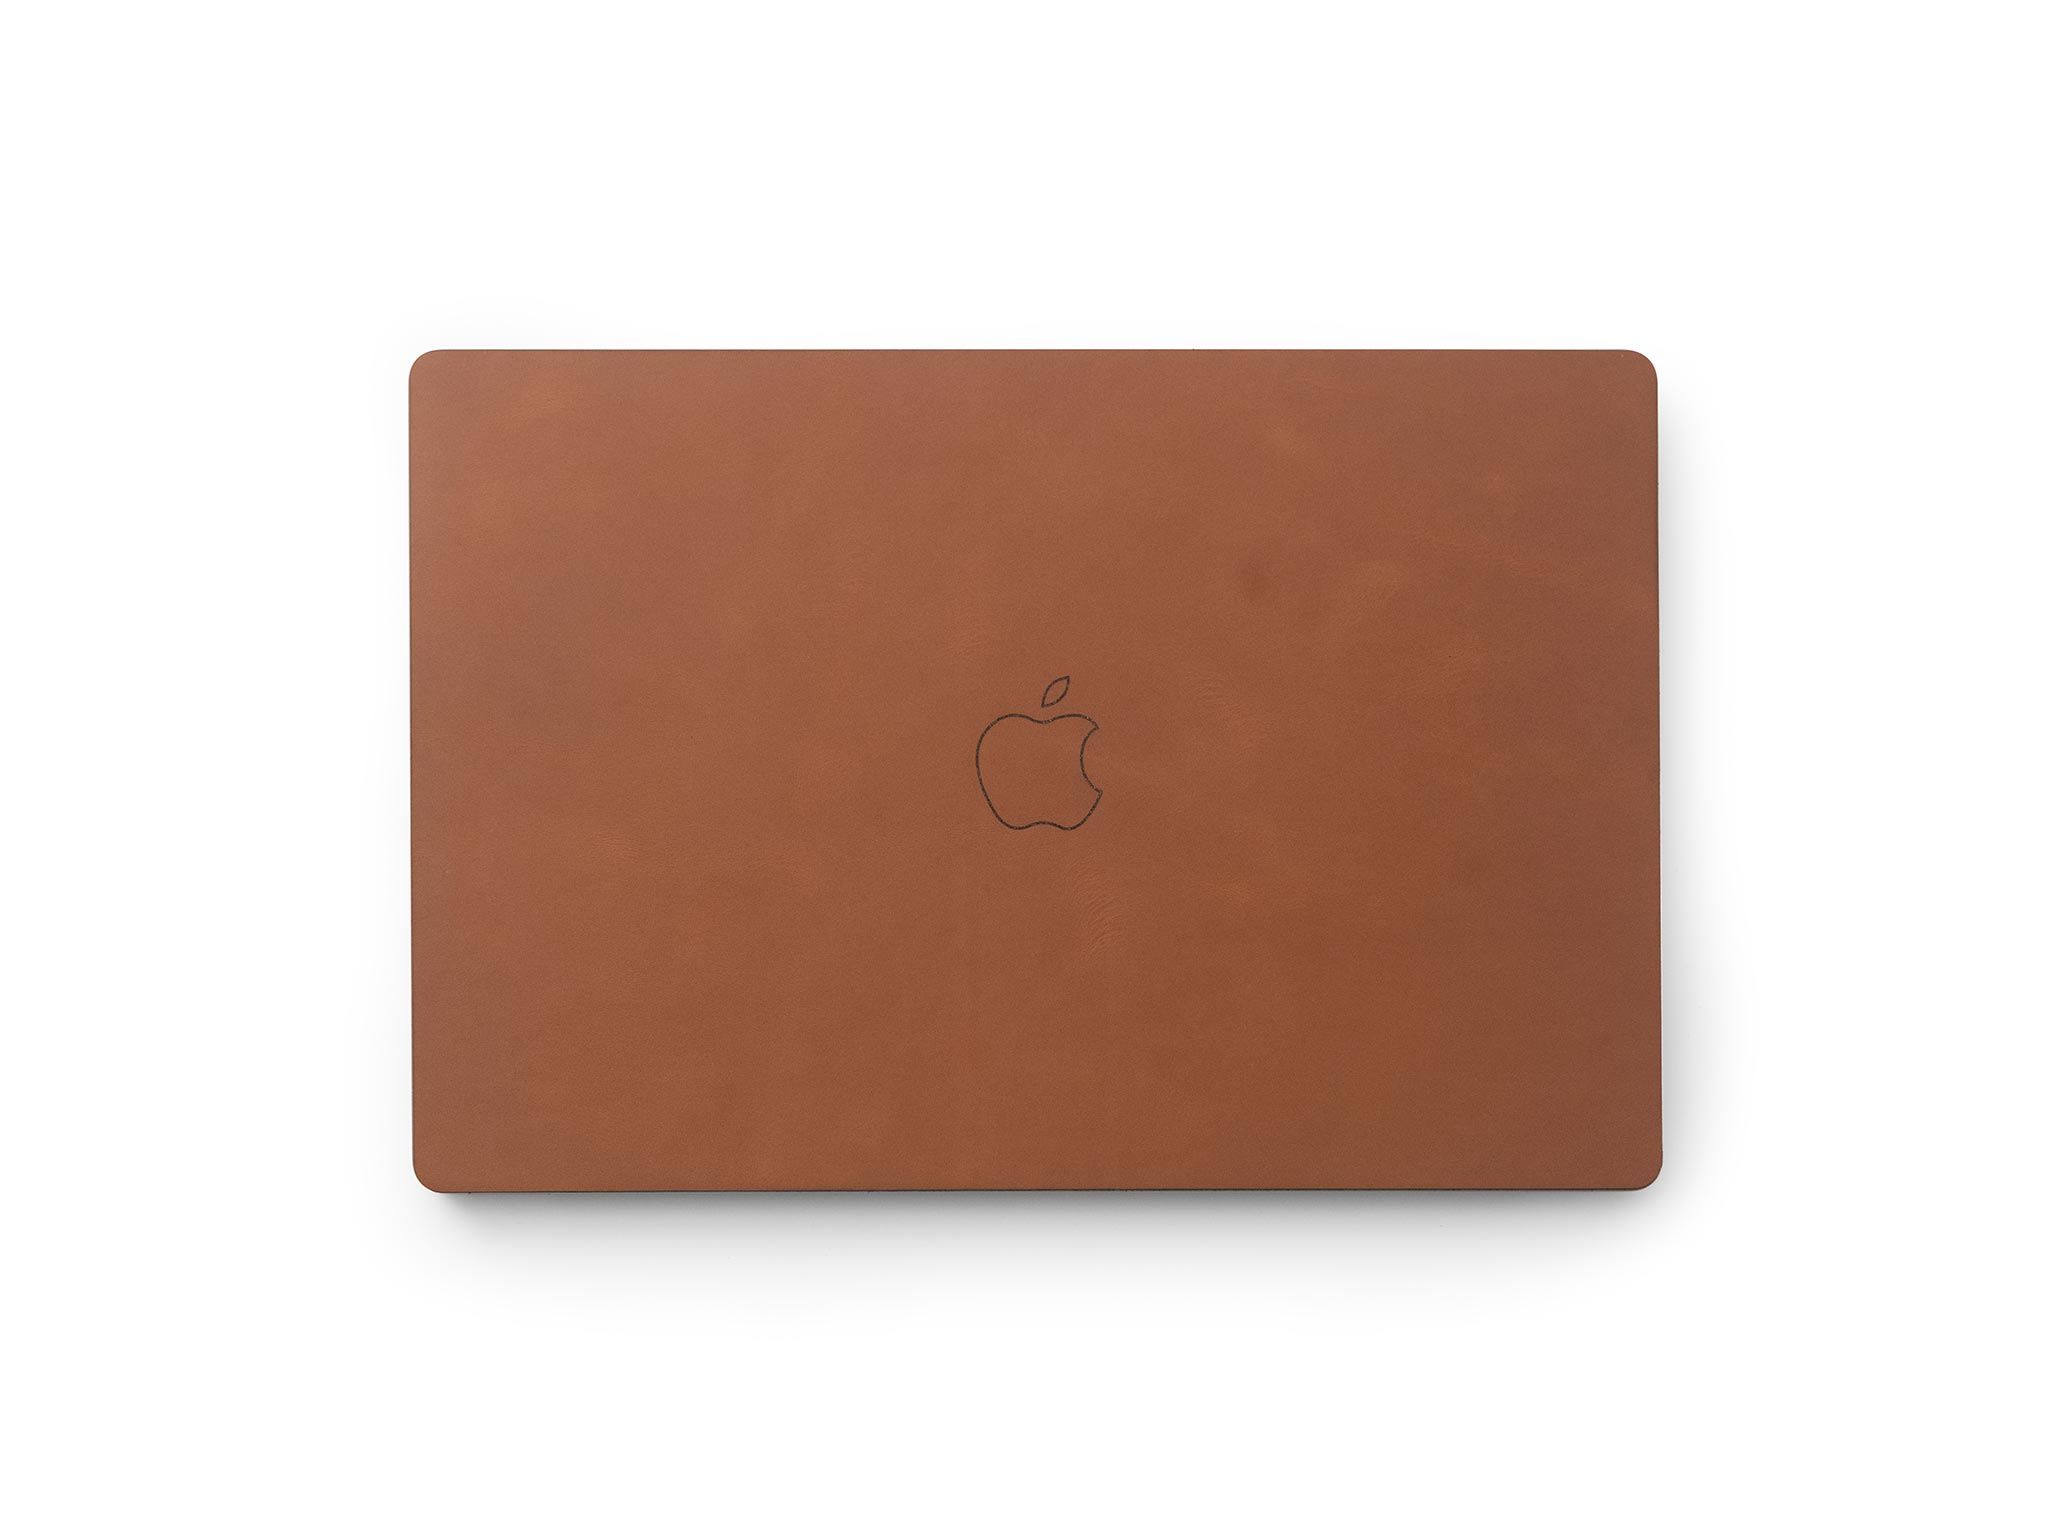  Macbook Pro 16″ M1 (2021) - Dán da cả bộ 